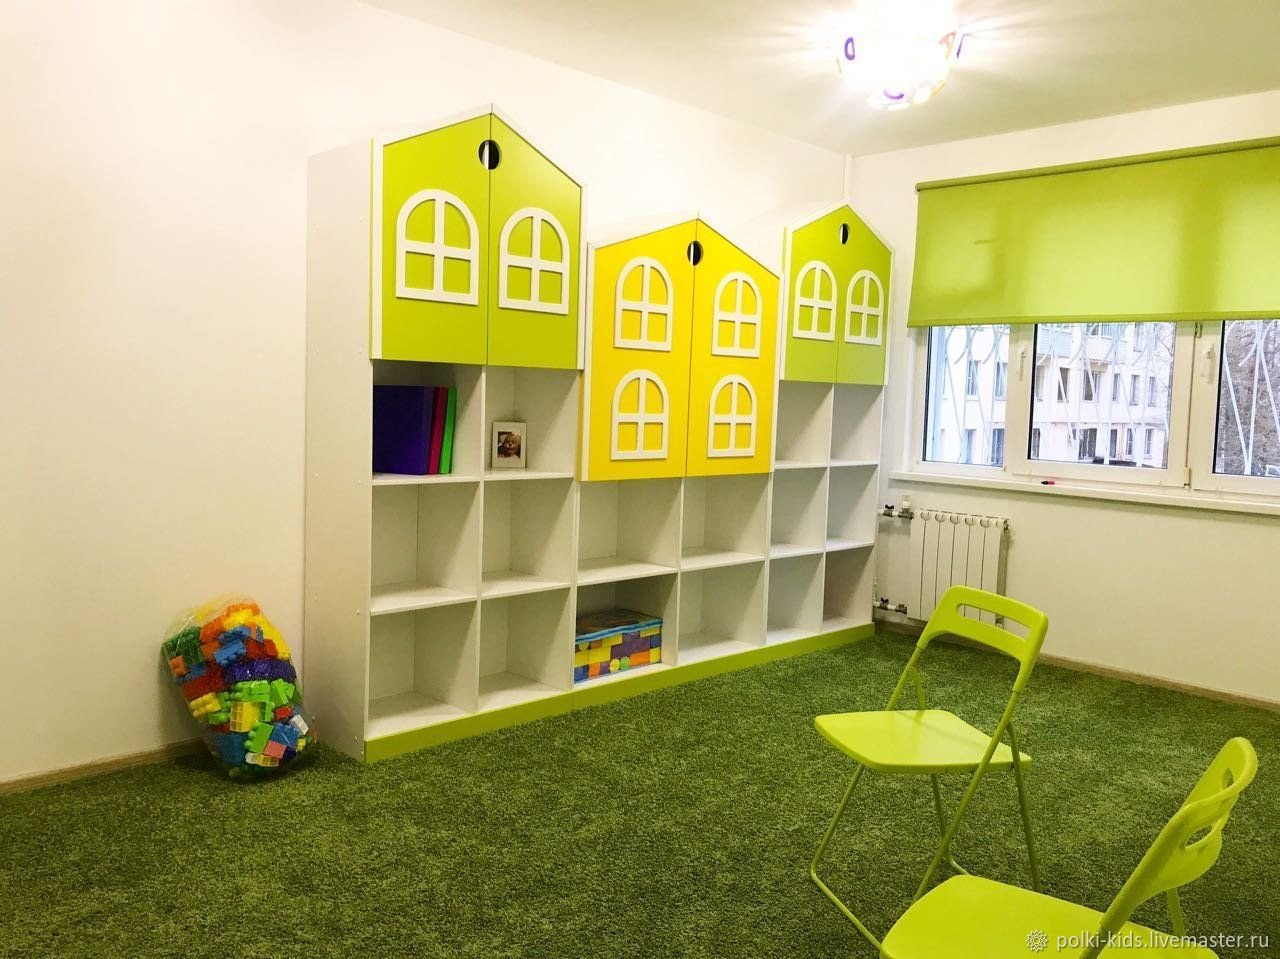 Стеллажи для книг и игрушек - купить стеллажи в детский сад | ODELEX